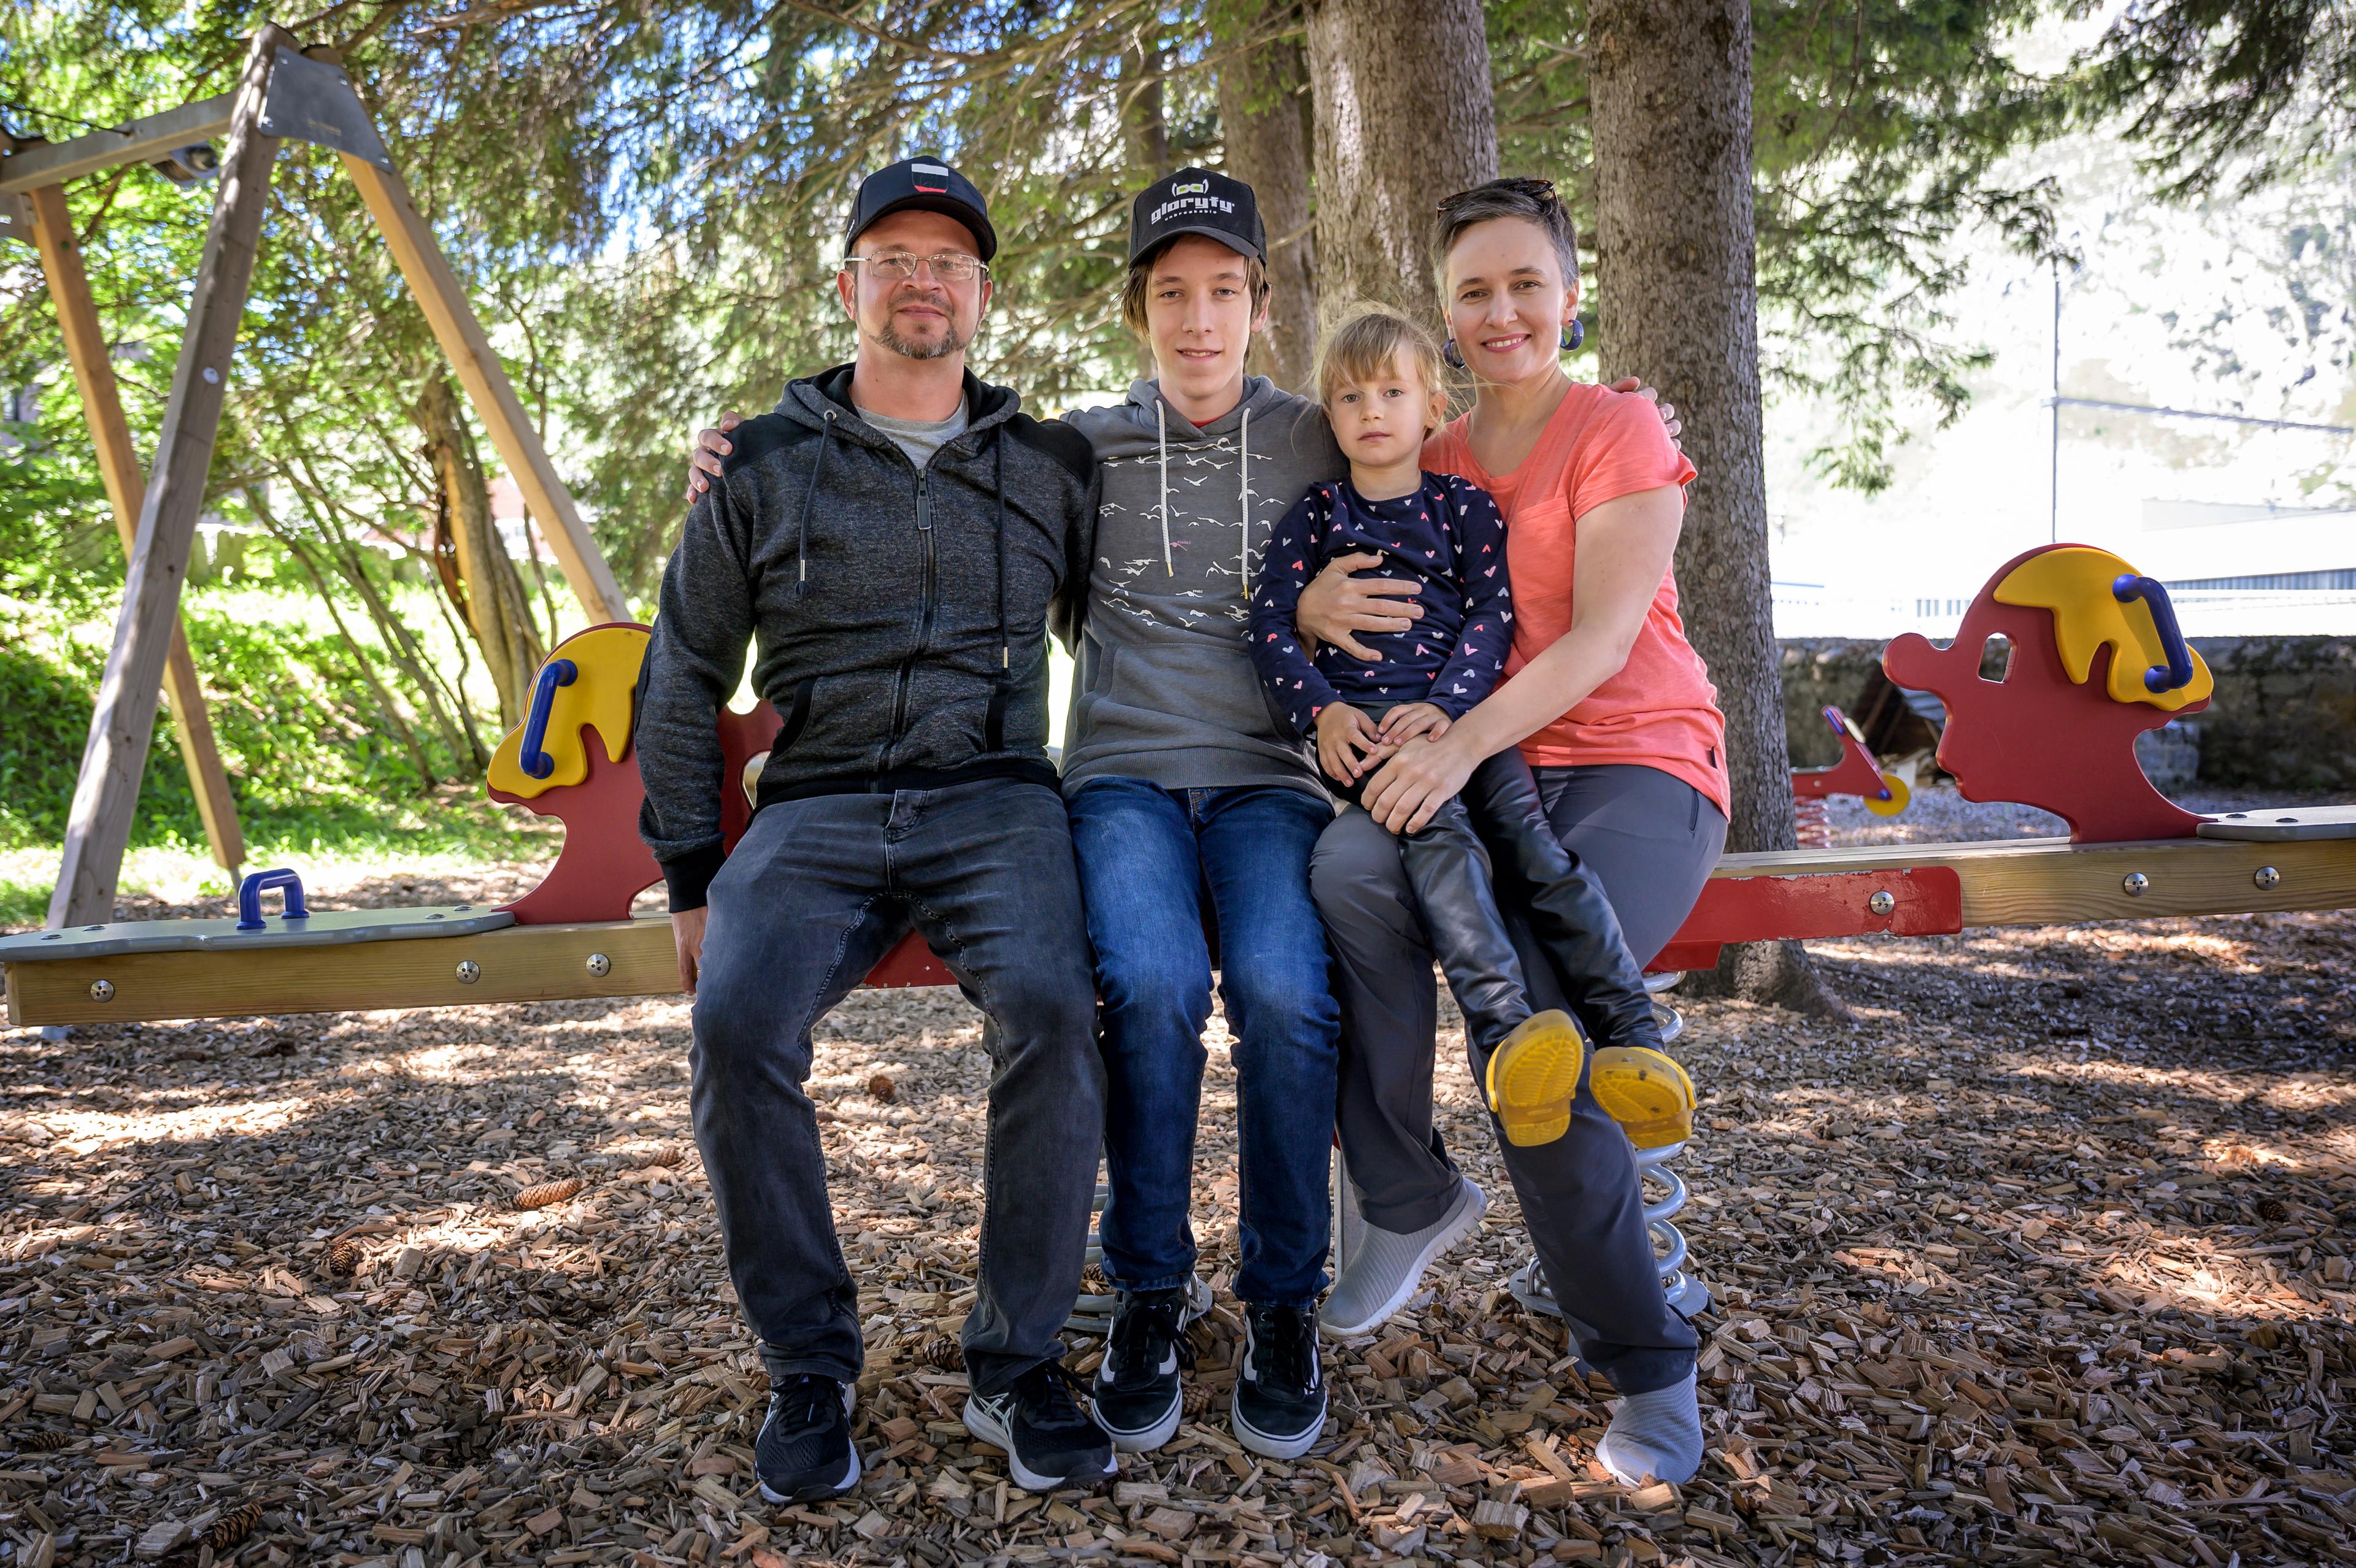 Natalia et Oleksiy Makiienko, des réfugiés ukrainiens, avec leurs enfants Vlad et Diana. Ils sont assis sur une balançoire sur une aire de jeux.